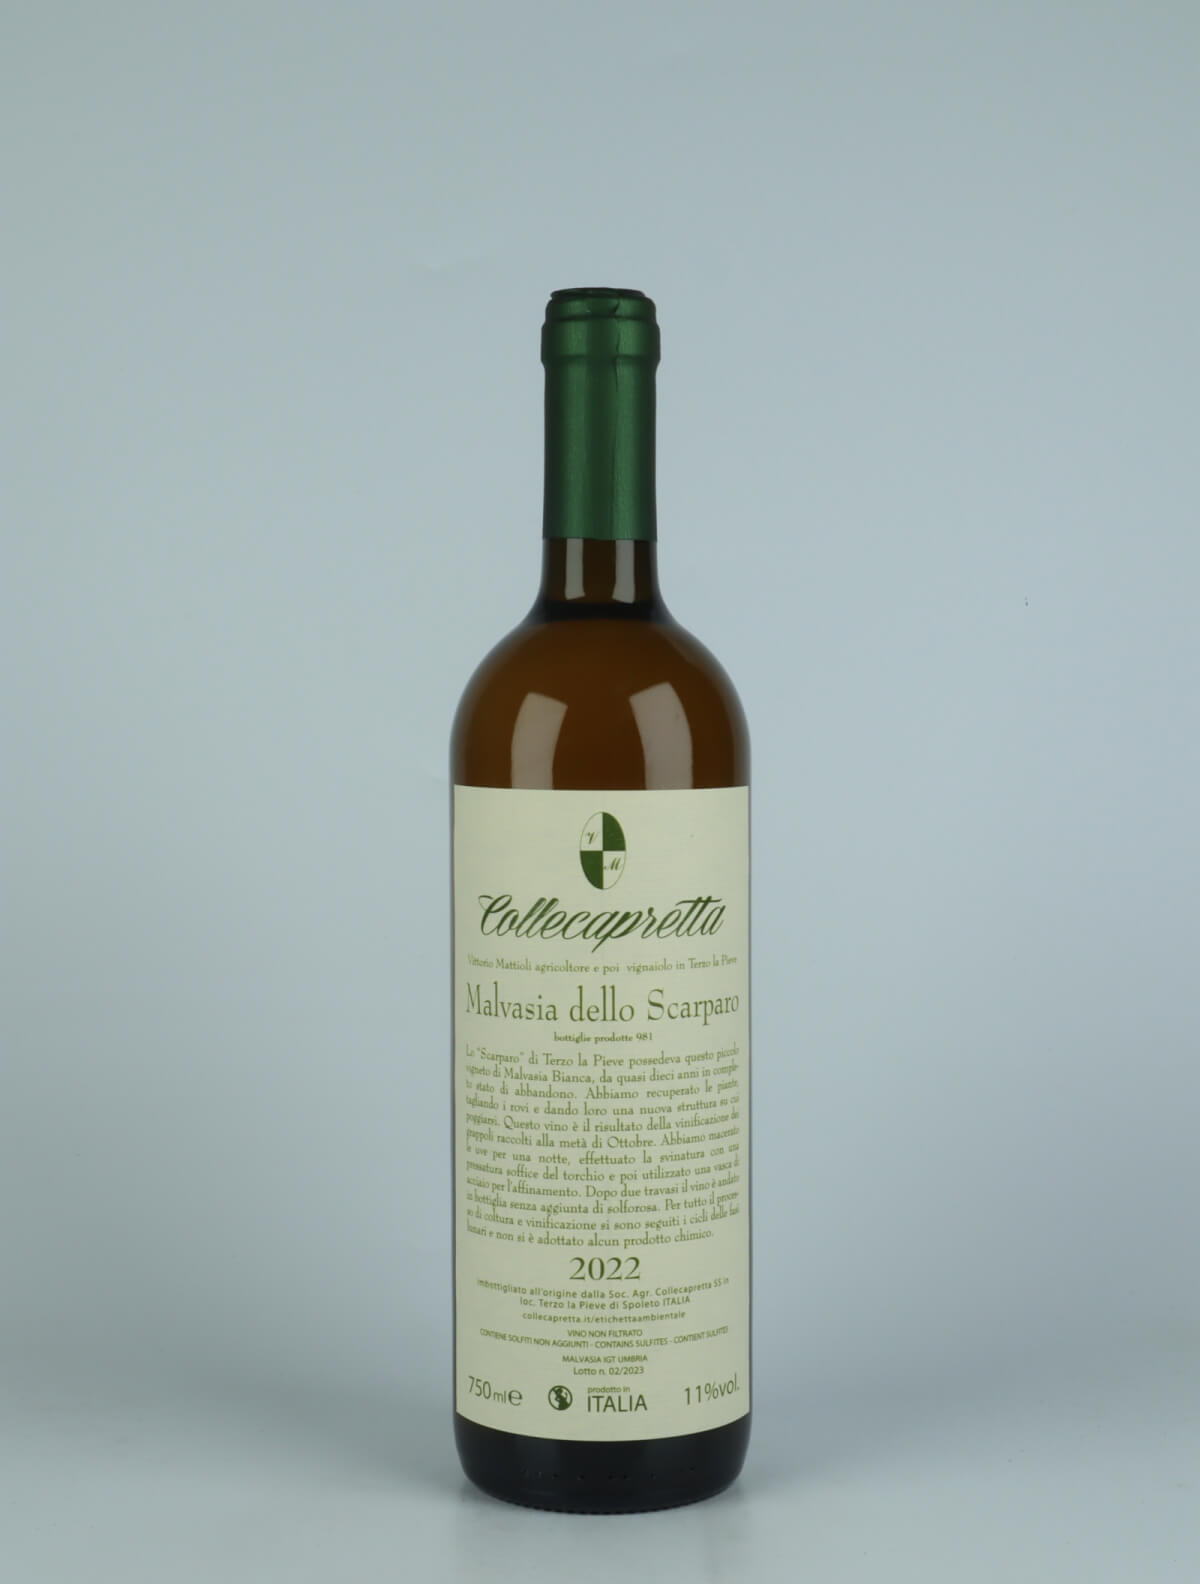 A bottle 2022 Malvasia dello Scarparo Orange wine from Collecapretta, Umbria in Italy